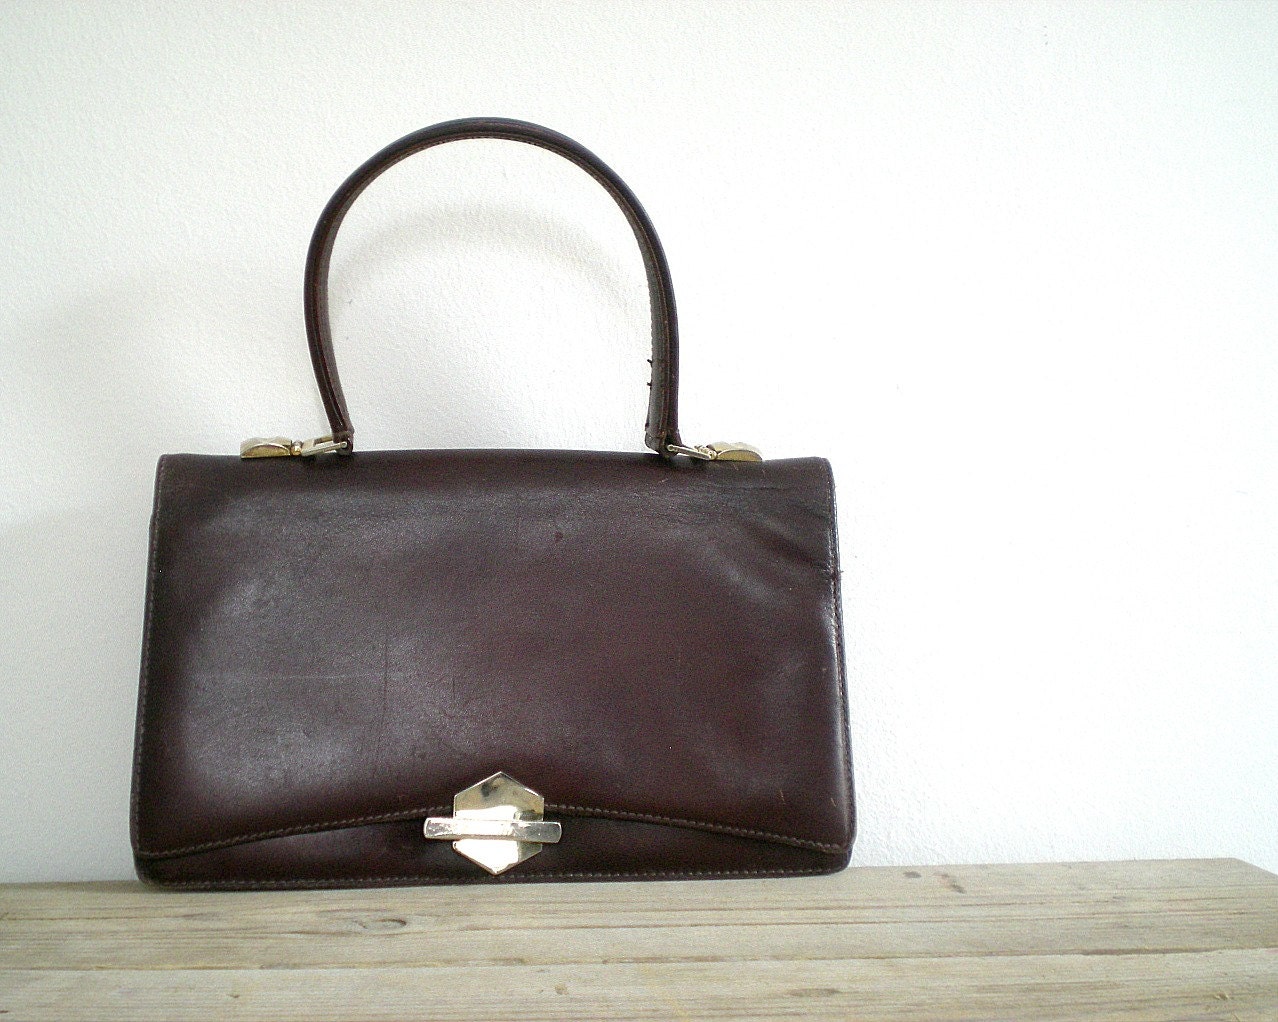 LEATHER lady handbag, vintage brown purse, sixties, MOD - viadeinavigli